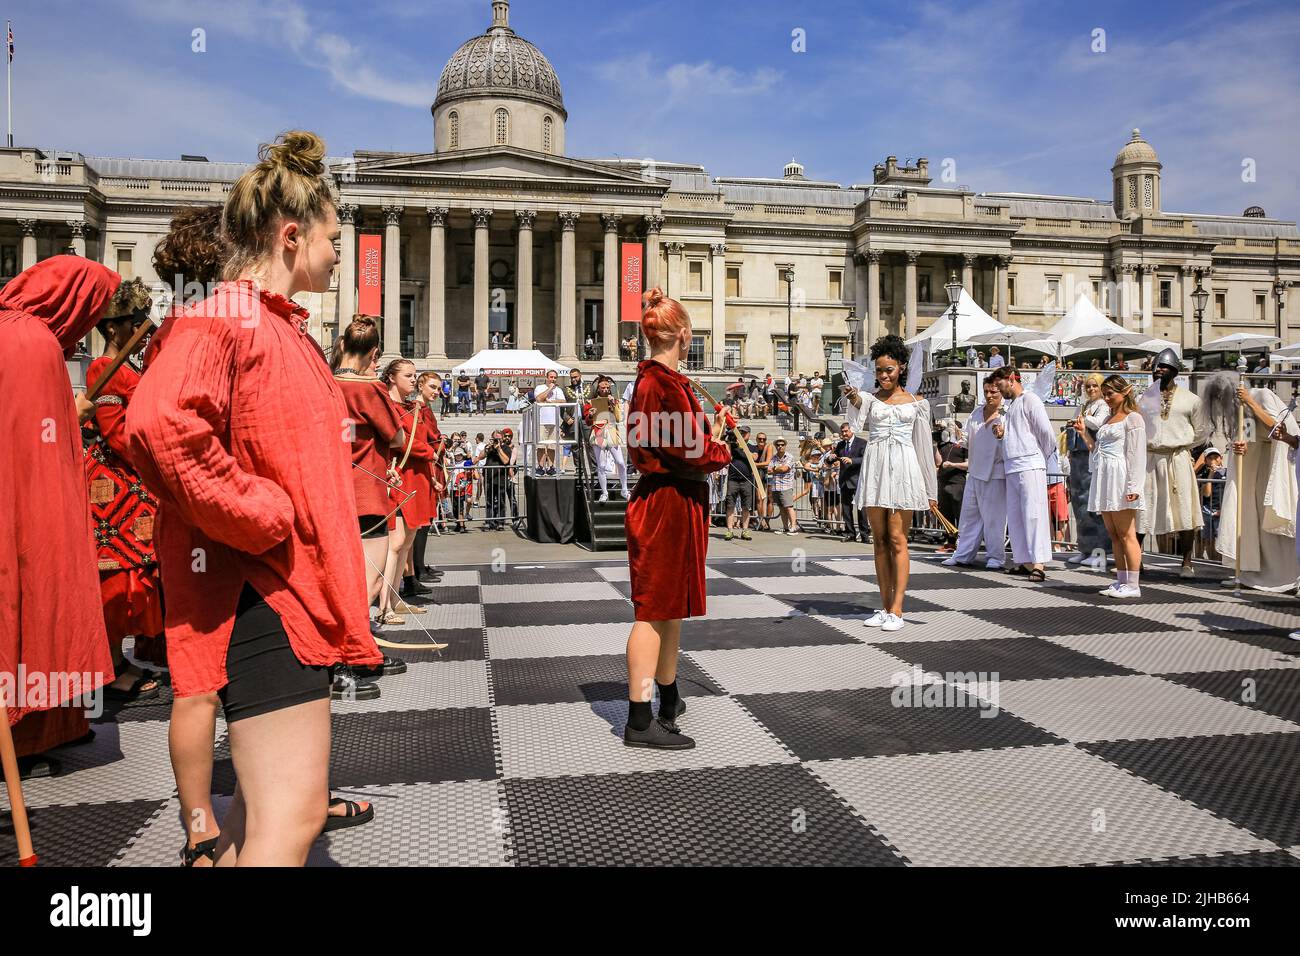 Londra, Regno Unito. 17th luglio 2022. Un set di scacchi vivente, con 32 attori professionisti che assumono il ruolo dei pezzi di scacchi, porta divertimento al pubblico, che guarda la rievocazione di un gioco di campionato. I giocatori di tutte le età e le capacità giocano a scacchi sulla piazza. Il più grande evento di scacchi della durata di una giornata si svolge a Trafalgar Square, Londra, ed è rivolto a chiunque ami o voglia imparare gli scacchi, ed è gratuito. Credit: Imagplotter/Alamy Live News Foto Stock